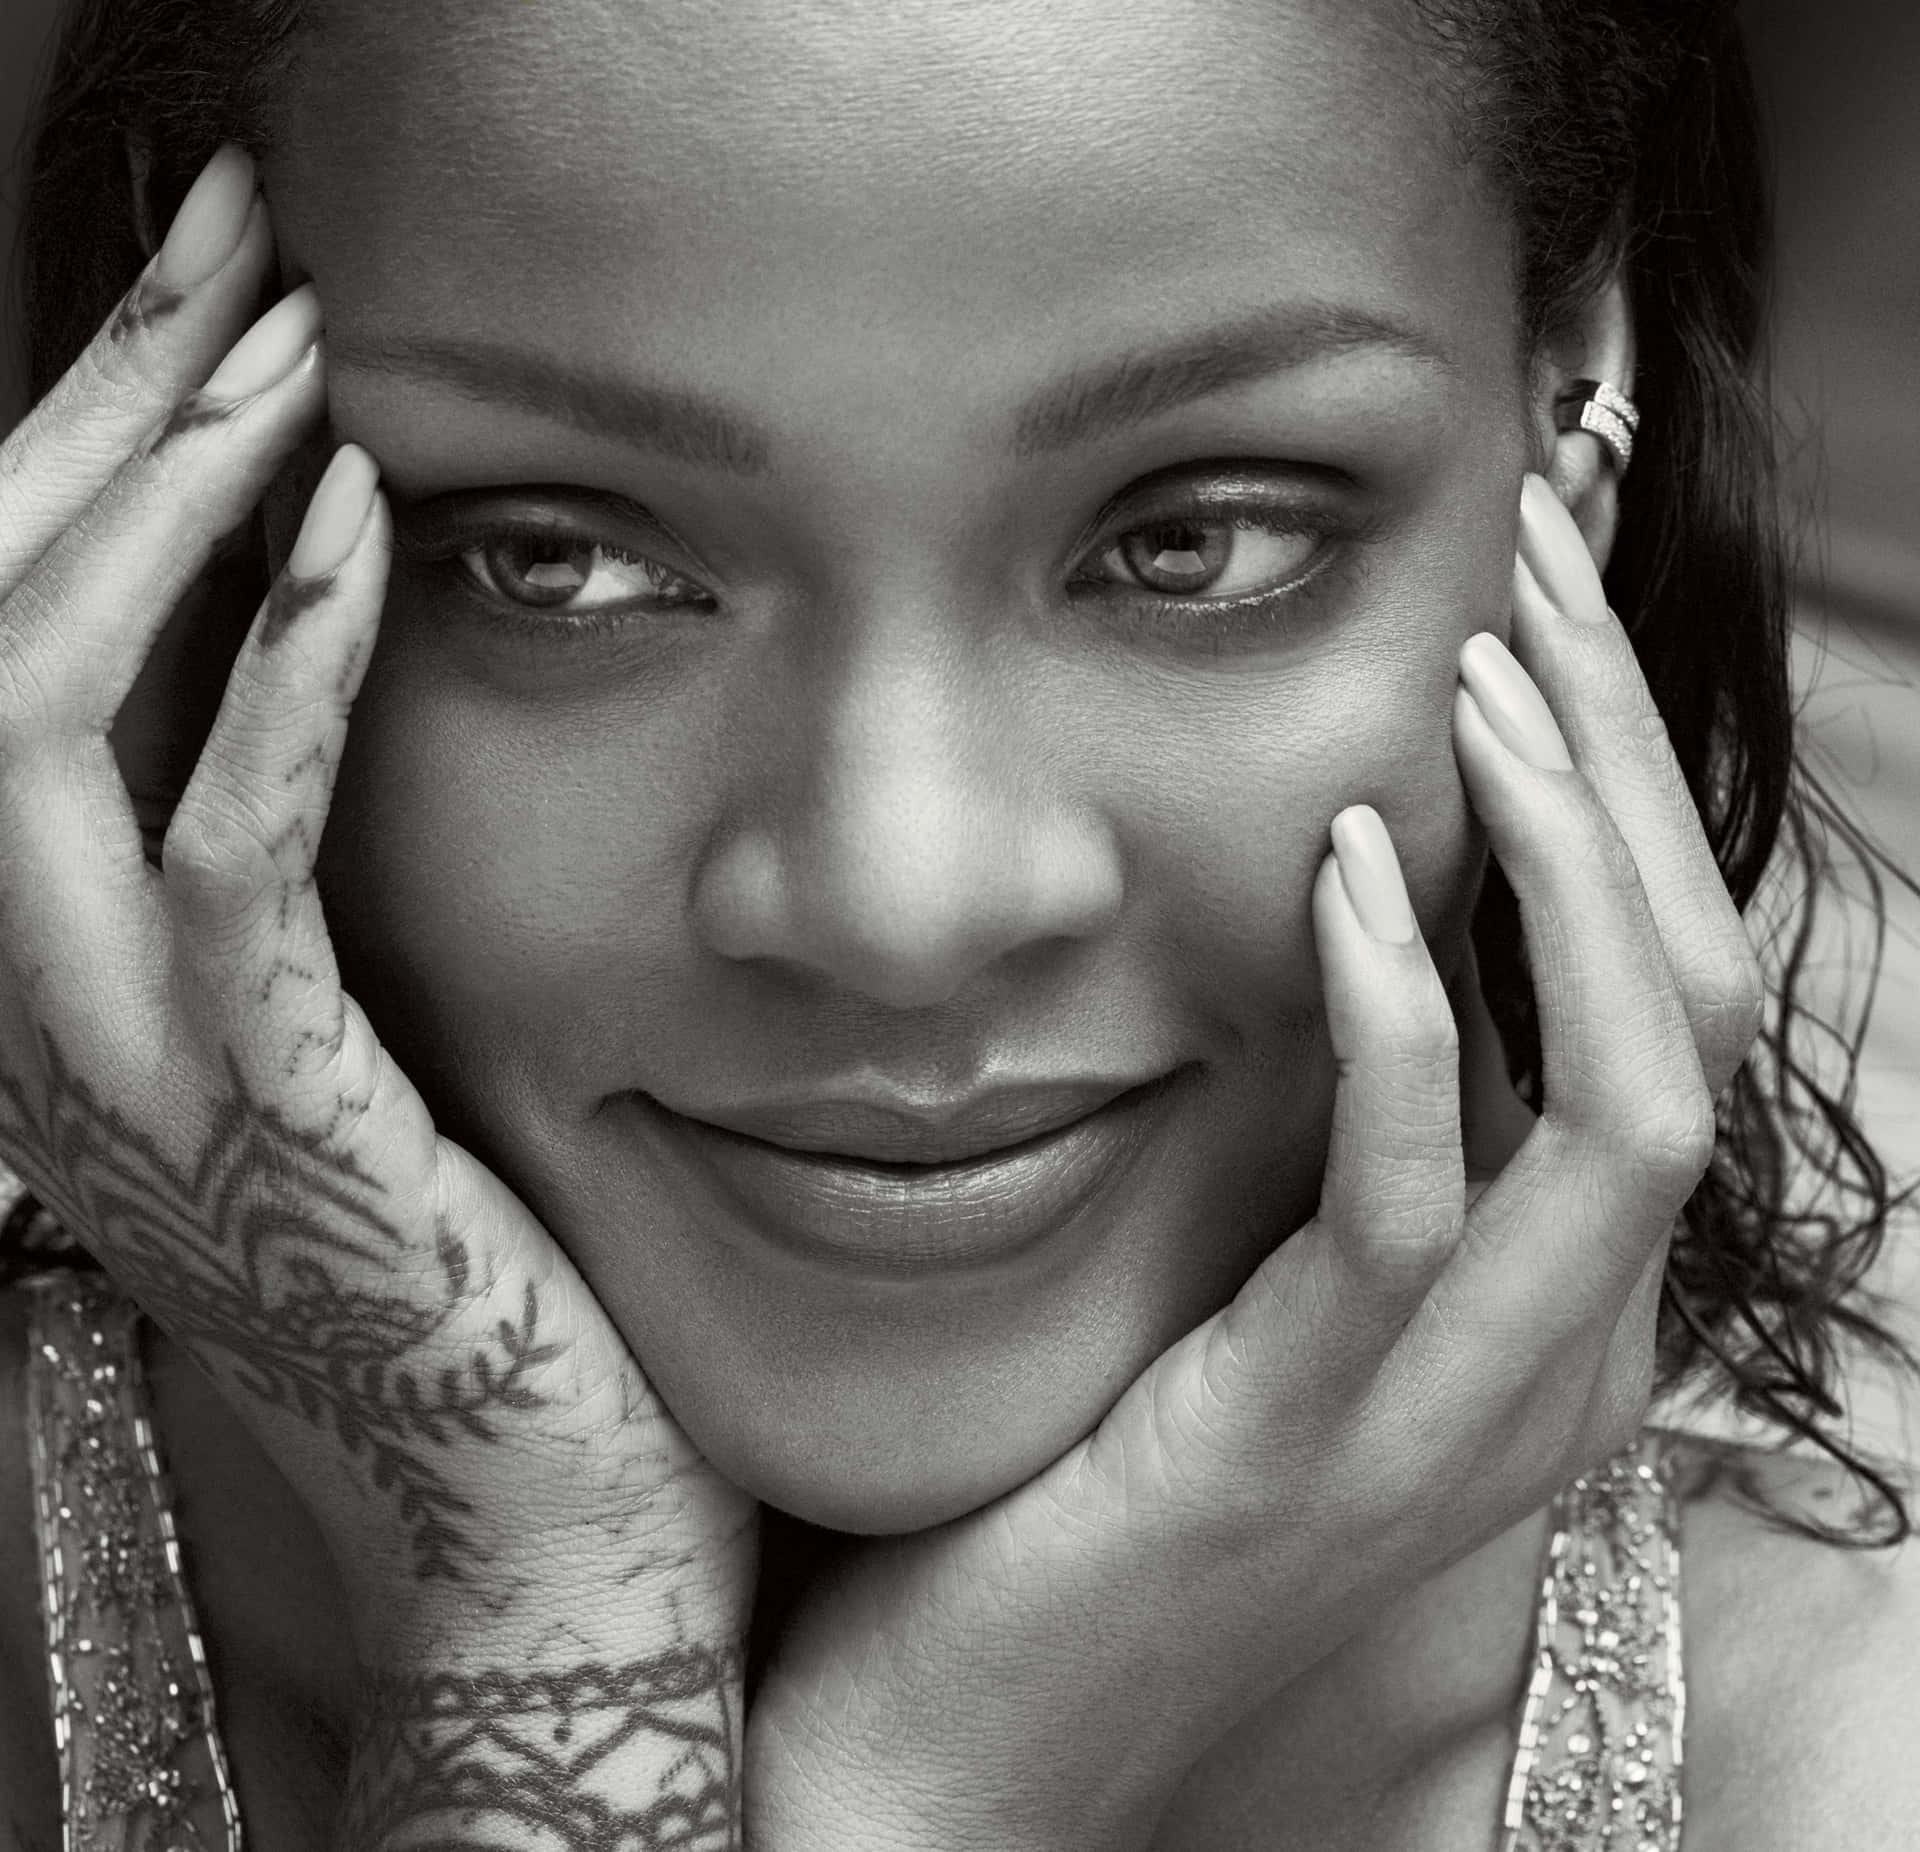 Rihannagenießt Eine Nacht Draußen.